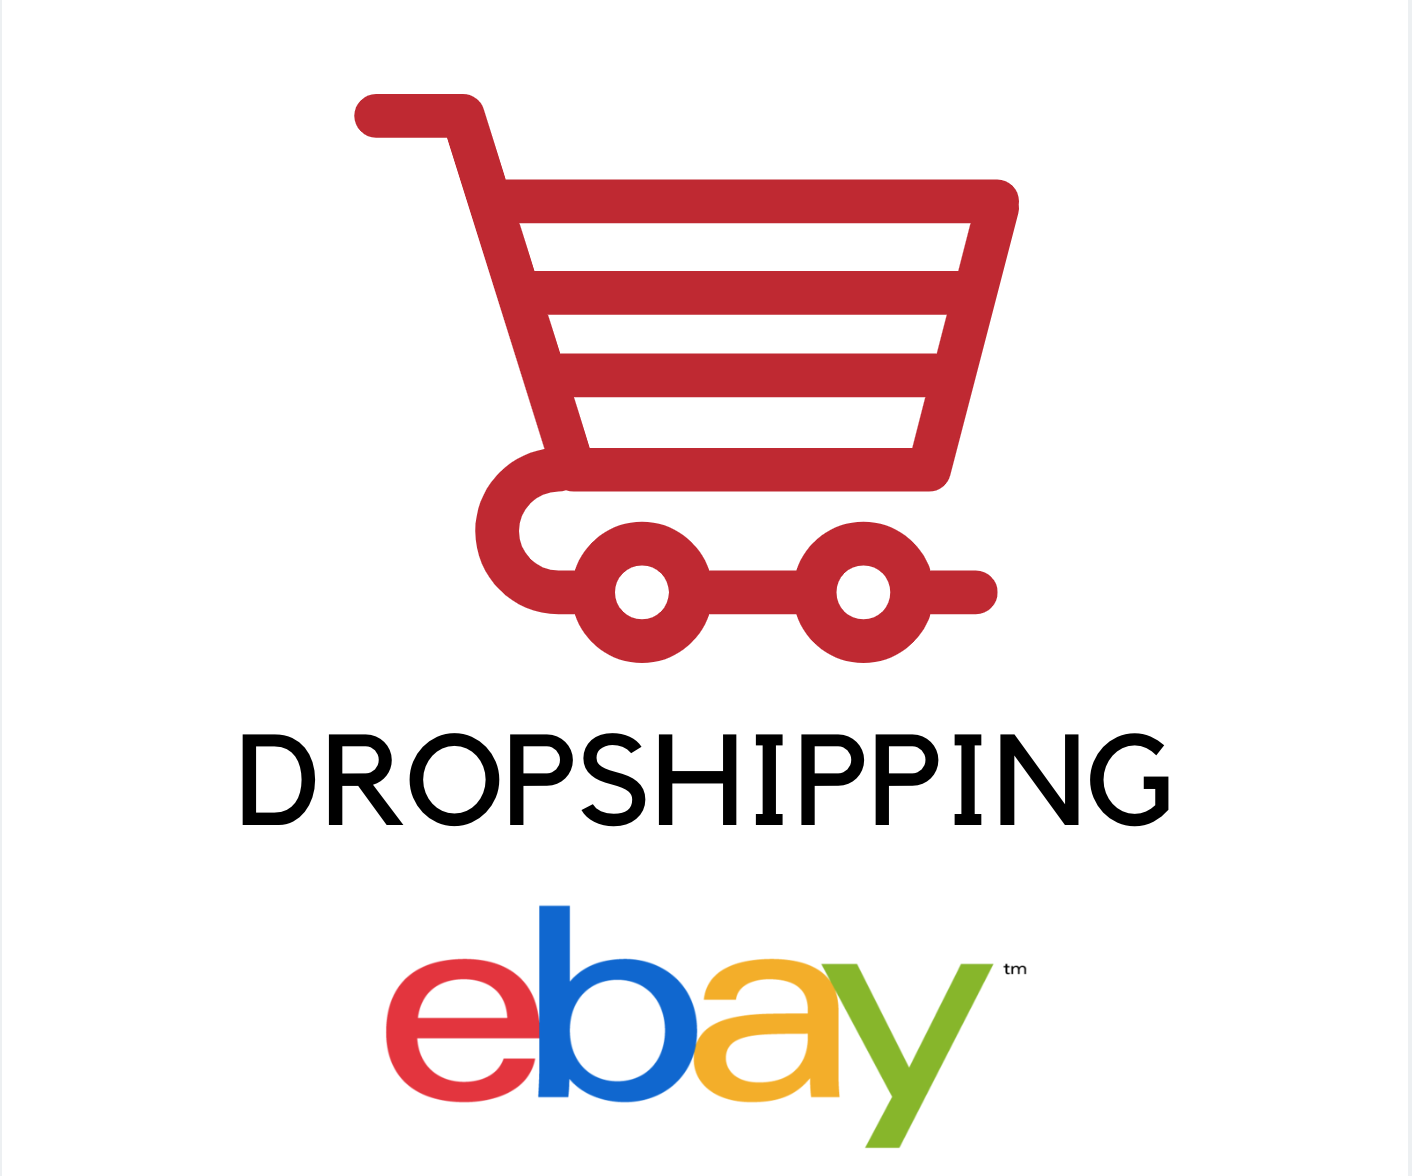 dropshipping ebay 7 conseils pour réusisr